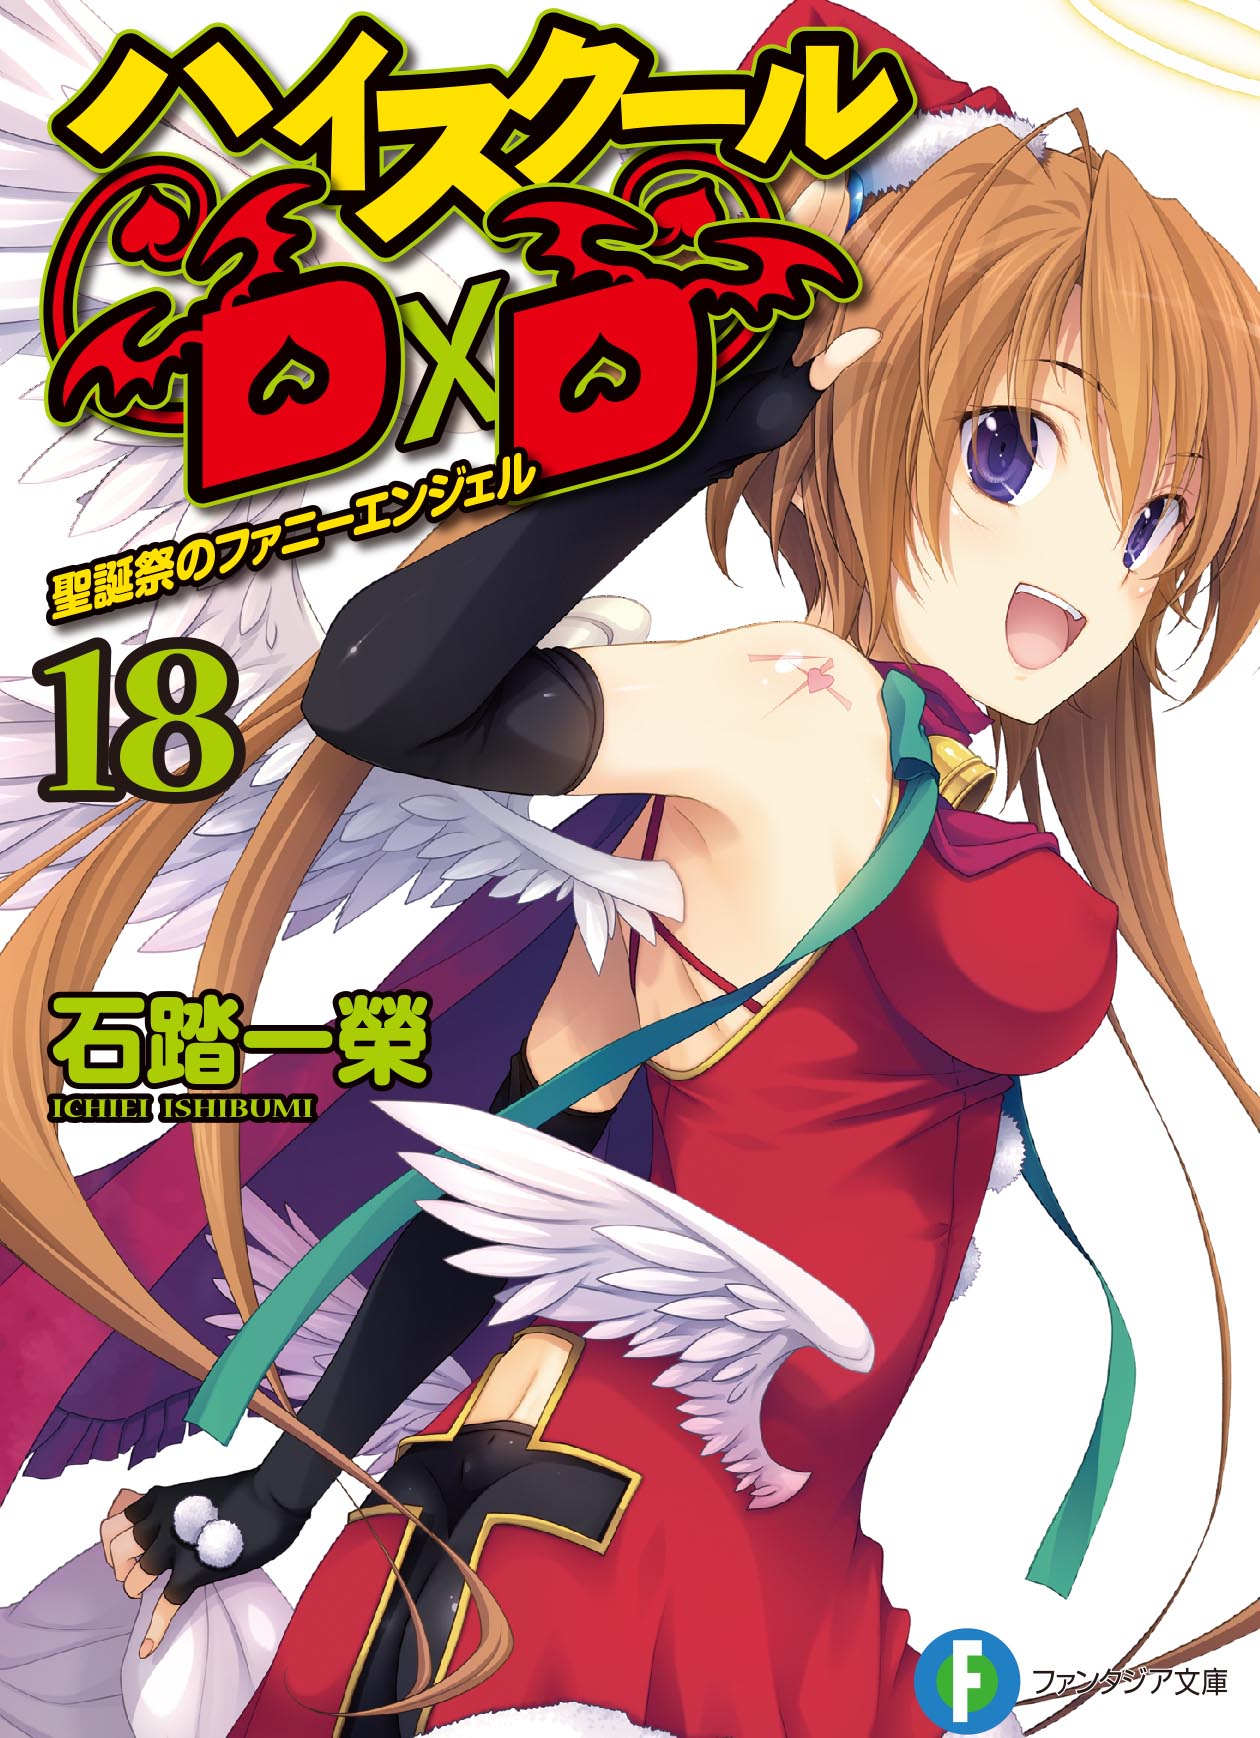 Light Novel Volume 8, High School DxD Wiki